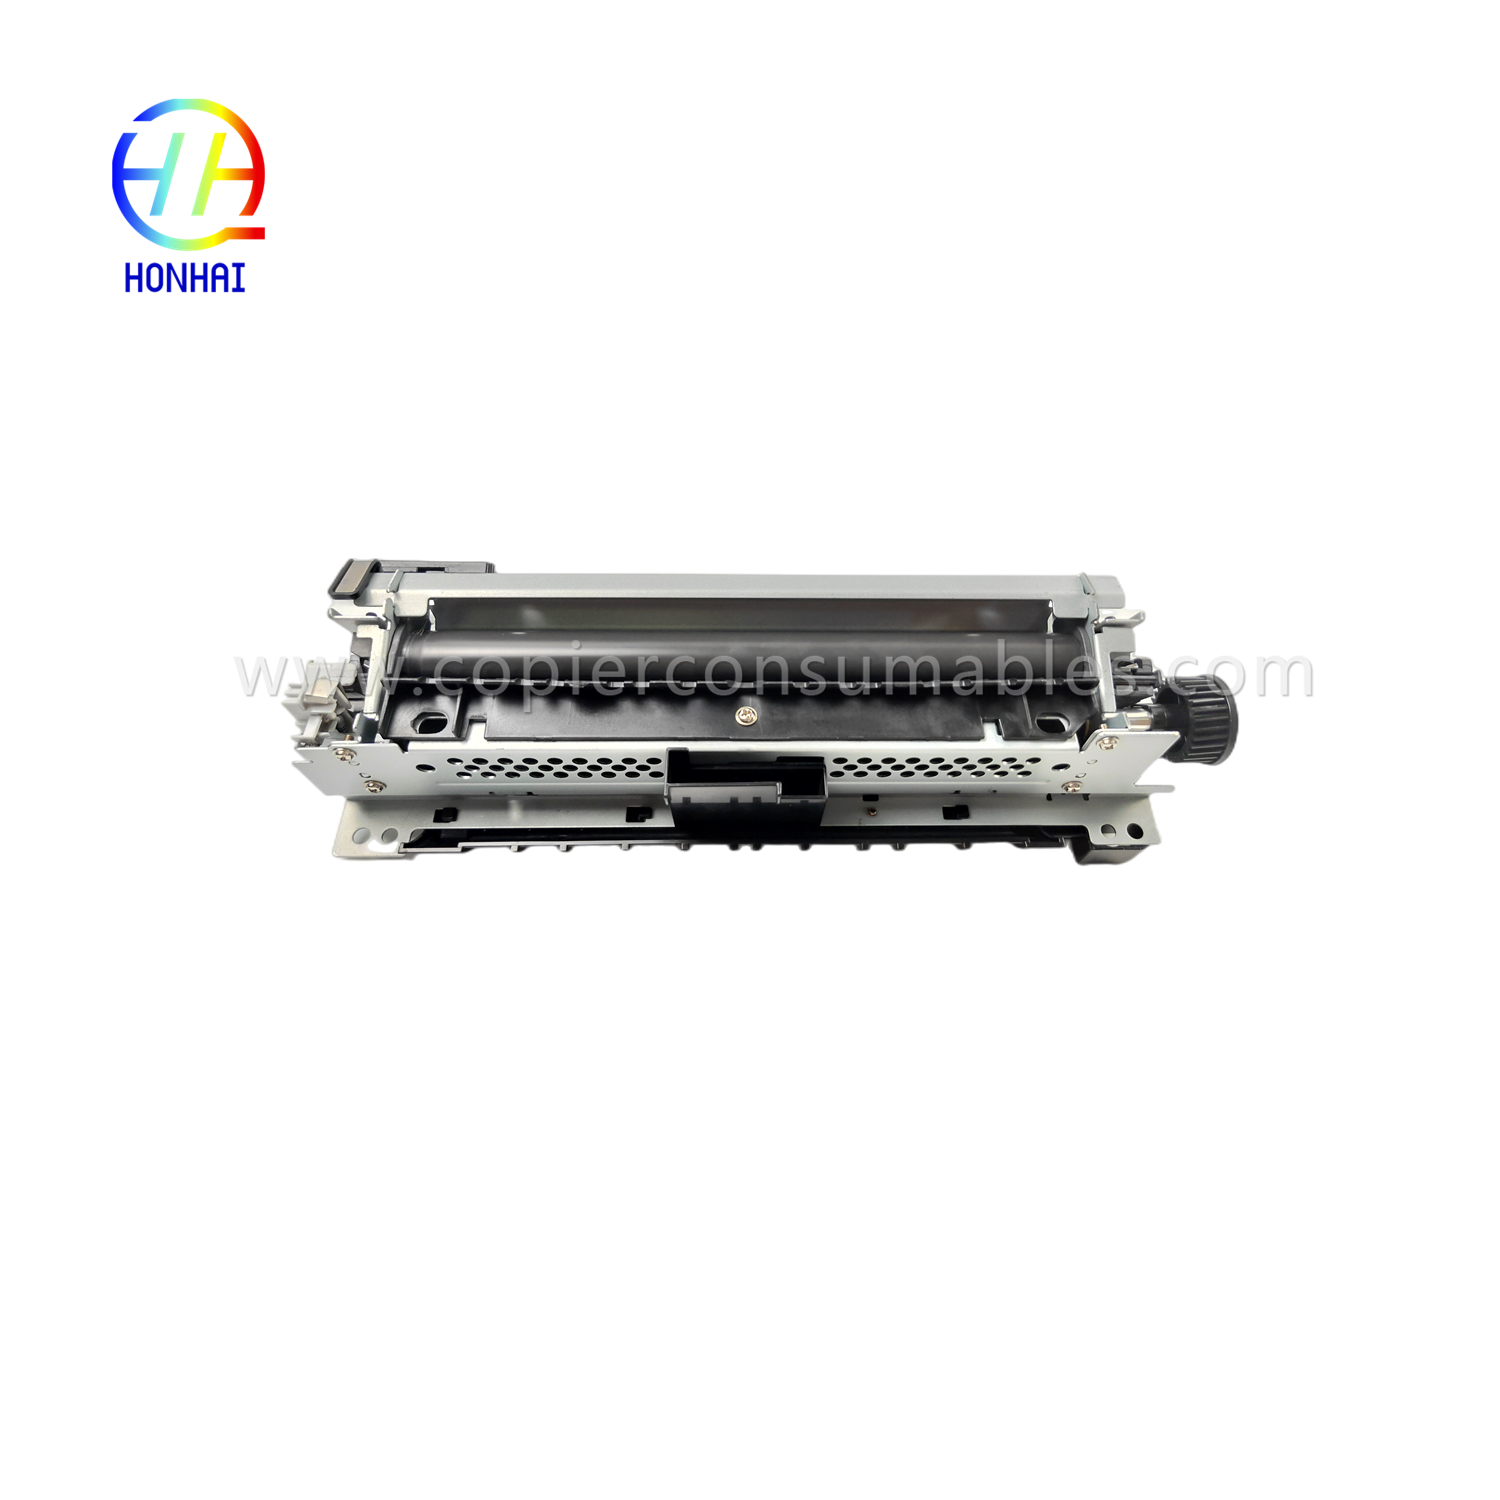 https://www.copierconsumables.com/fuser-assemblies-220v-japan-for-hp-521-525-m521-m525-rm1-8508-rm1-8508-000-fuser-unit-product/